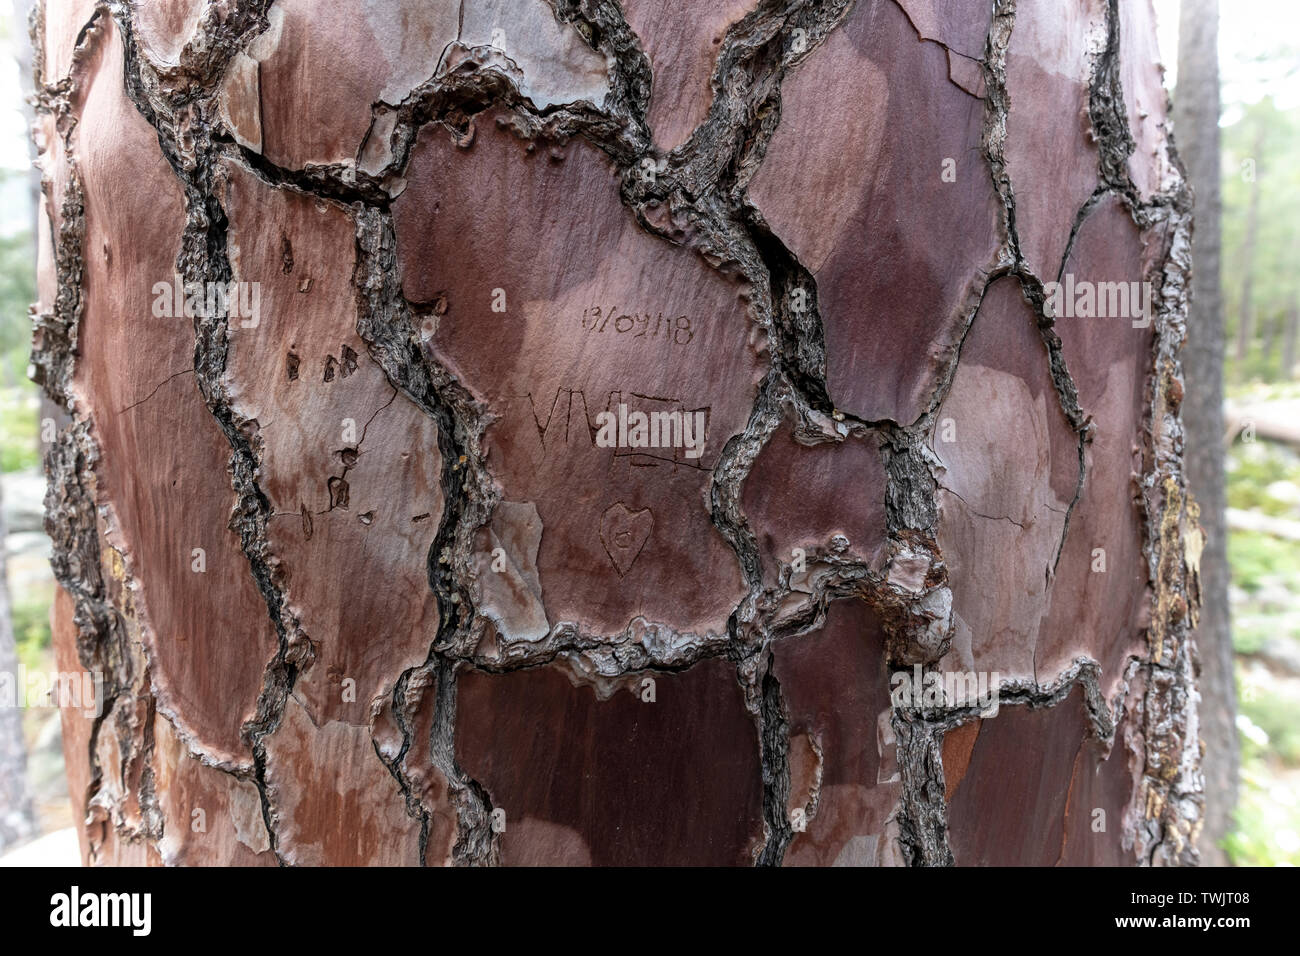 Namen mit Liebe Herz geschnitzt auf einer Rinde von Pine Tree Trunk, Korsika, Frankreich Stockfoto